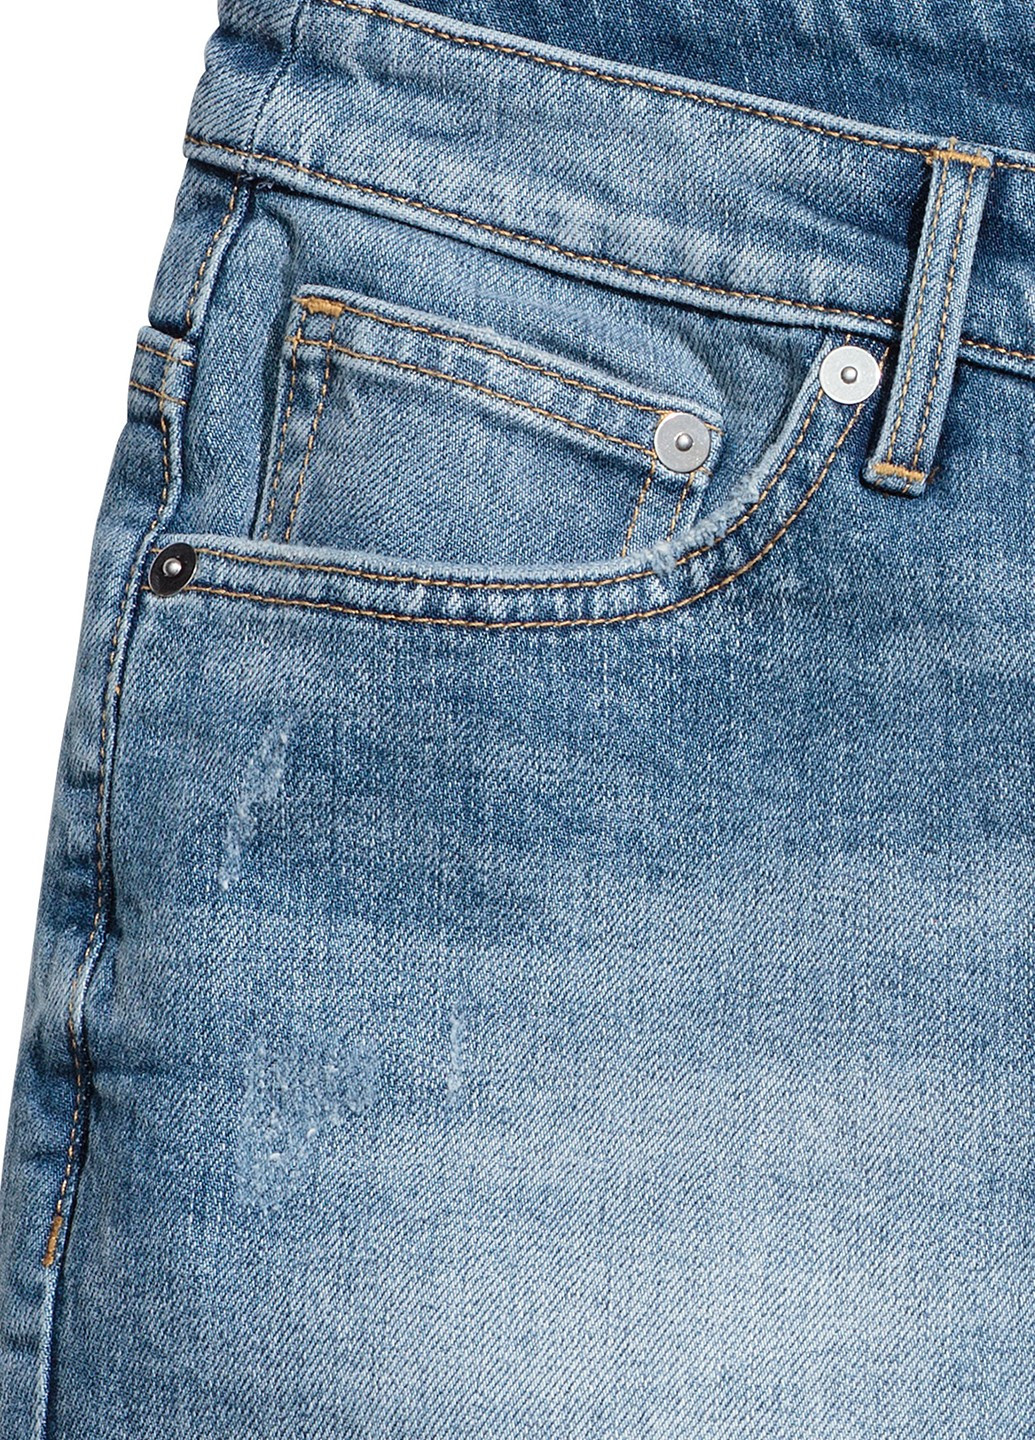 Шорты джинсовые H&M меланжи синие джинсовые